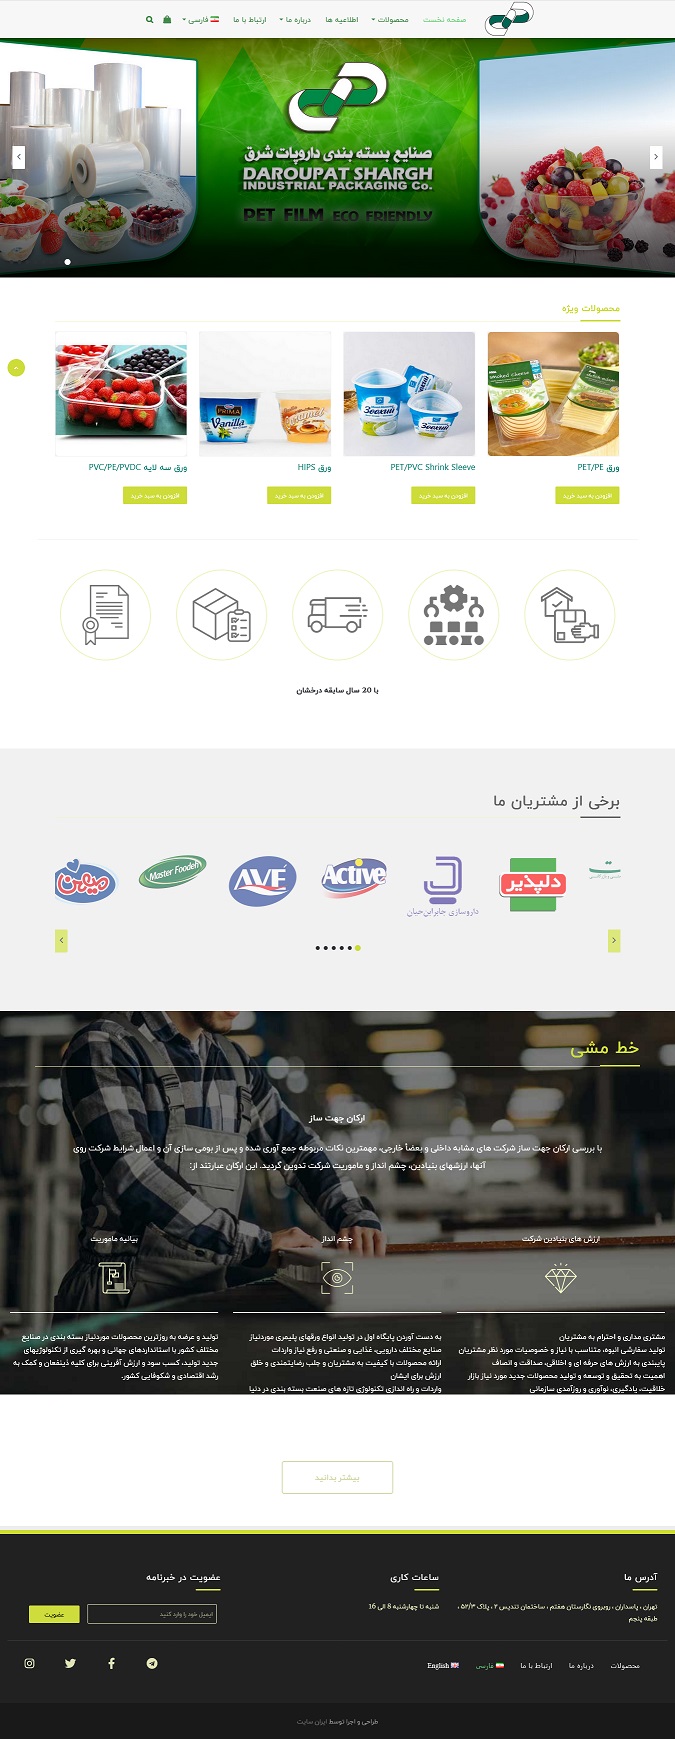 فروشگاه ساز - طراحی سایت فروشگاهی - طراحی سایت دیجیکالایی - طراحی سایت جند زبانه